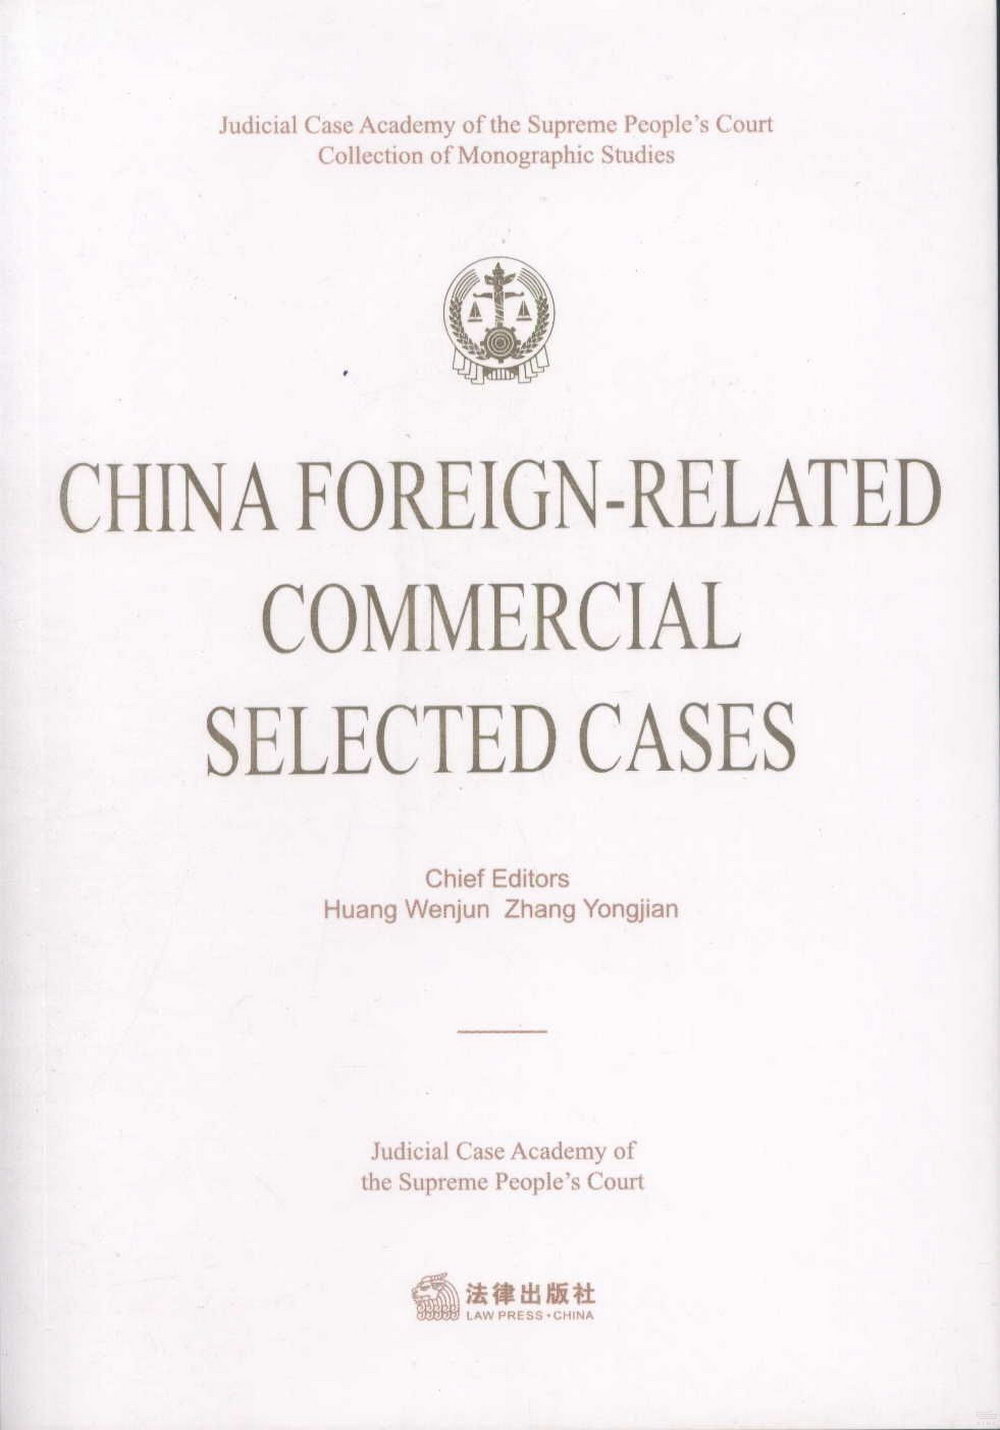 中國涉外商事案例精選：英文=CHINA FOREIGN-RELATED COMMERCIAL SELECTED CASES